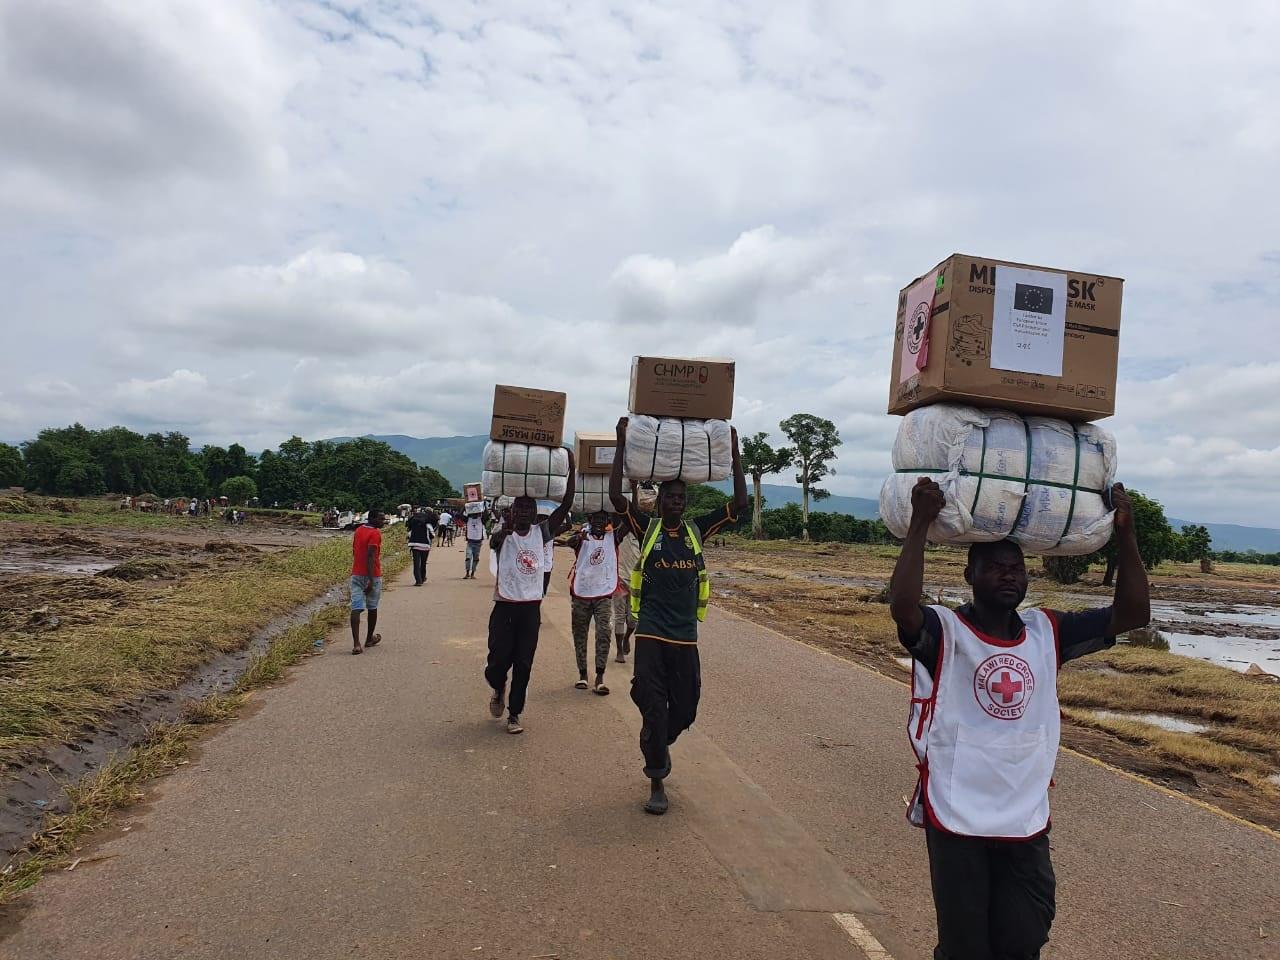 Plusieurs hommes des t-shirt de la Croix-Rouge portent des paquets au-dessus de leur tête. Ils avancent sur une route qui est entourée par des champs innondés.